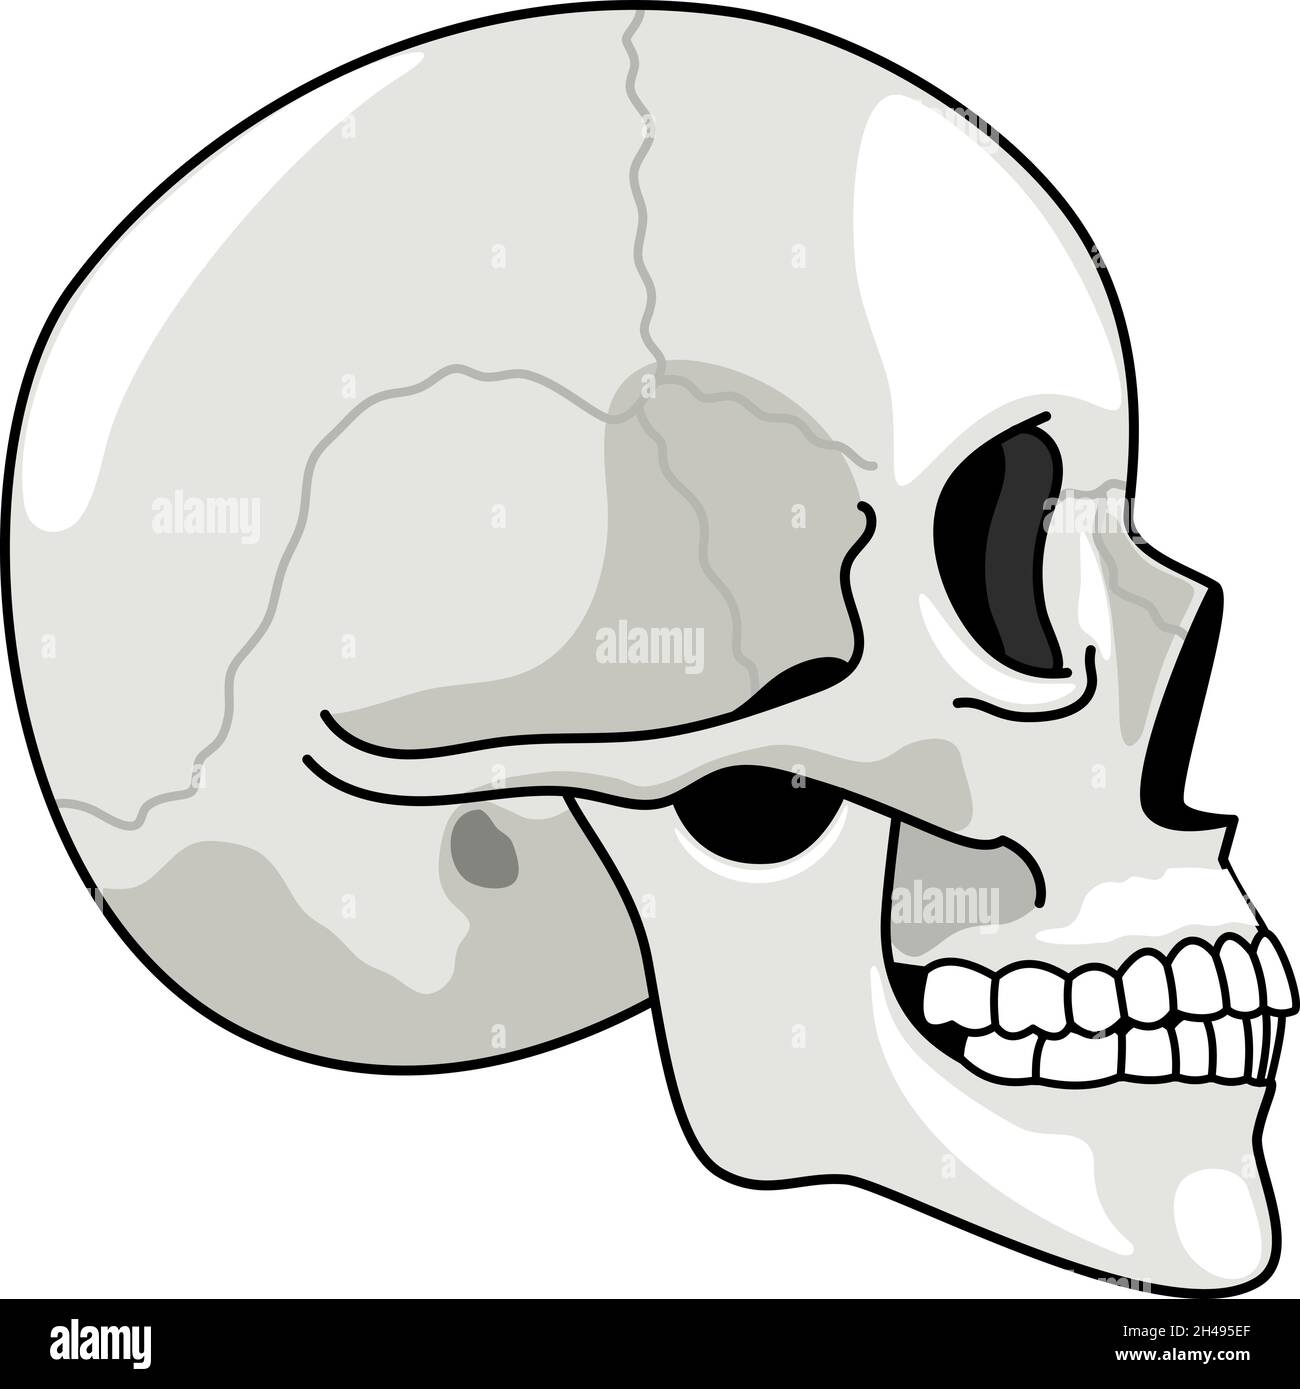 Perfil del cráneo. Imagen de cráneos grises sobre fondo blanco, símbolo de  anatomía de semitonos, dibujo de cabeza humana muerta ilustrada, dibujo de  esqueleto de grupa aislado sobre fondo blanco Imagen Vector